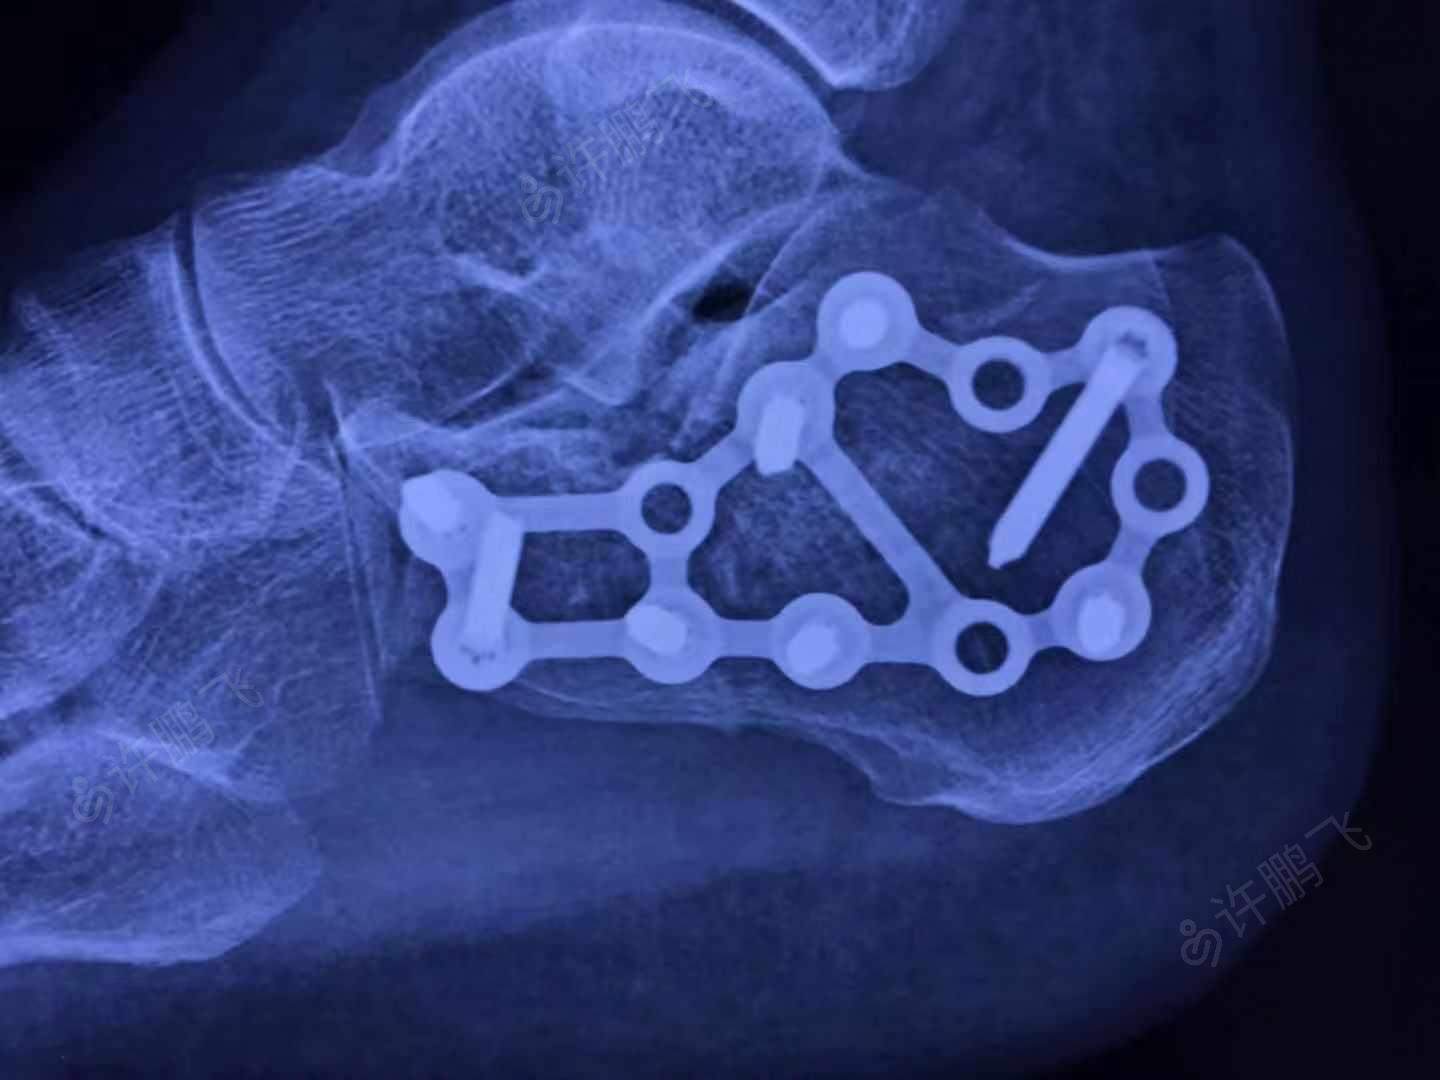 尺桡骨骨折手法复位 - 骨科与显微外科专业讨论版 - 爱爱医医学论坛